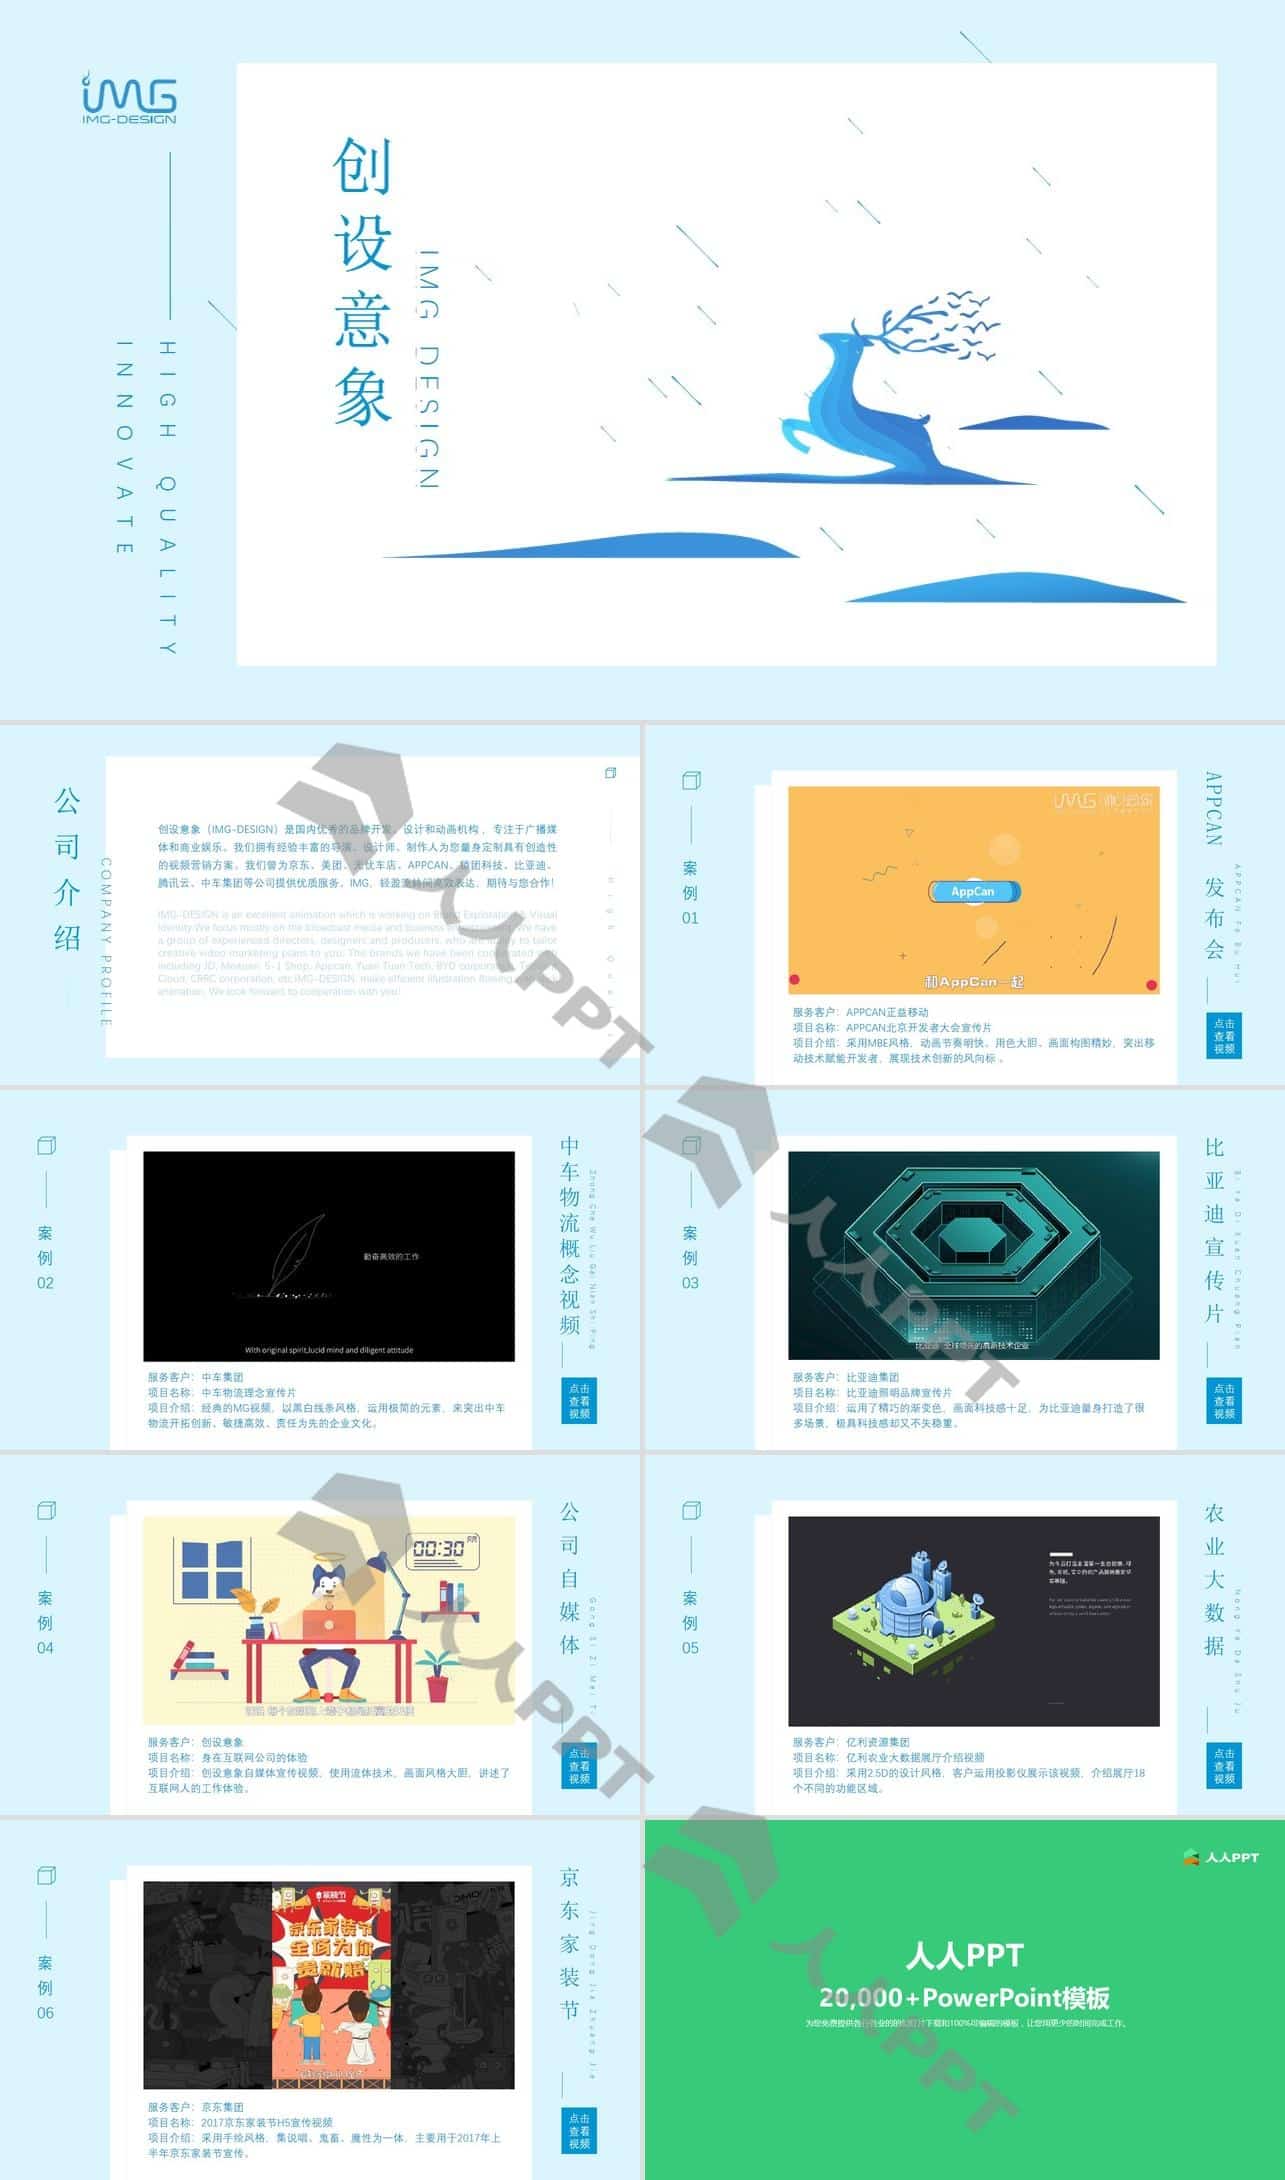 创设意象公司介绍及产品展示官方宣传PPT模板长图